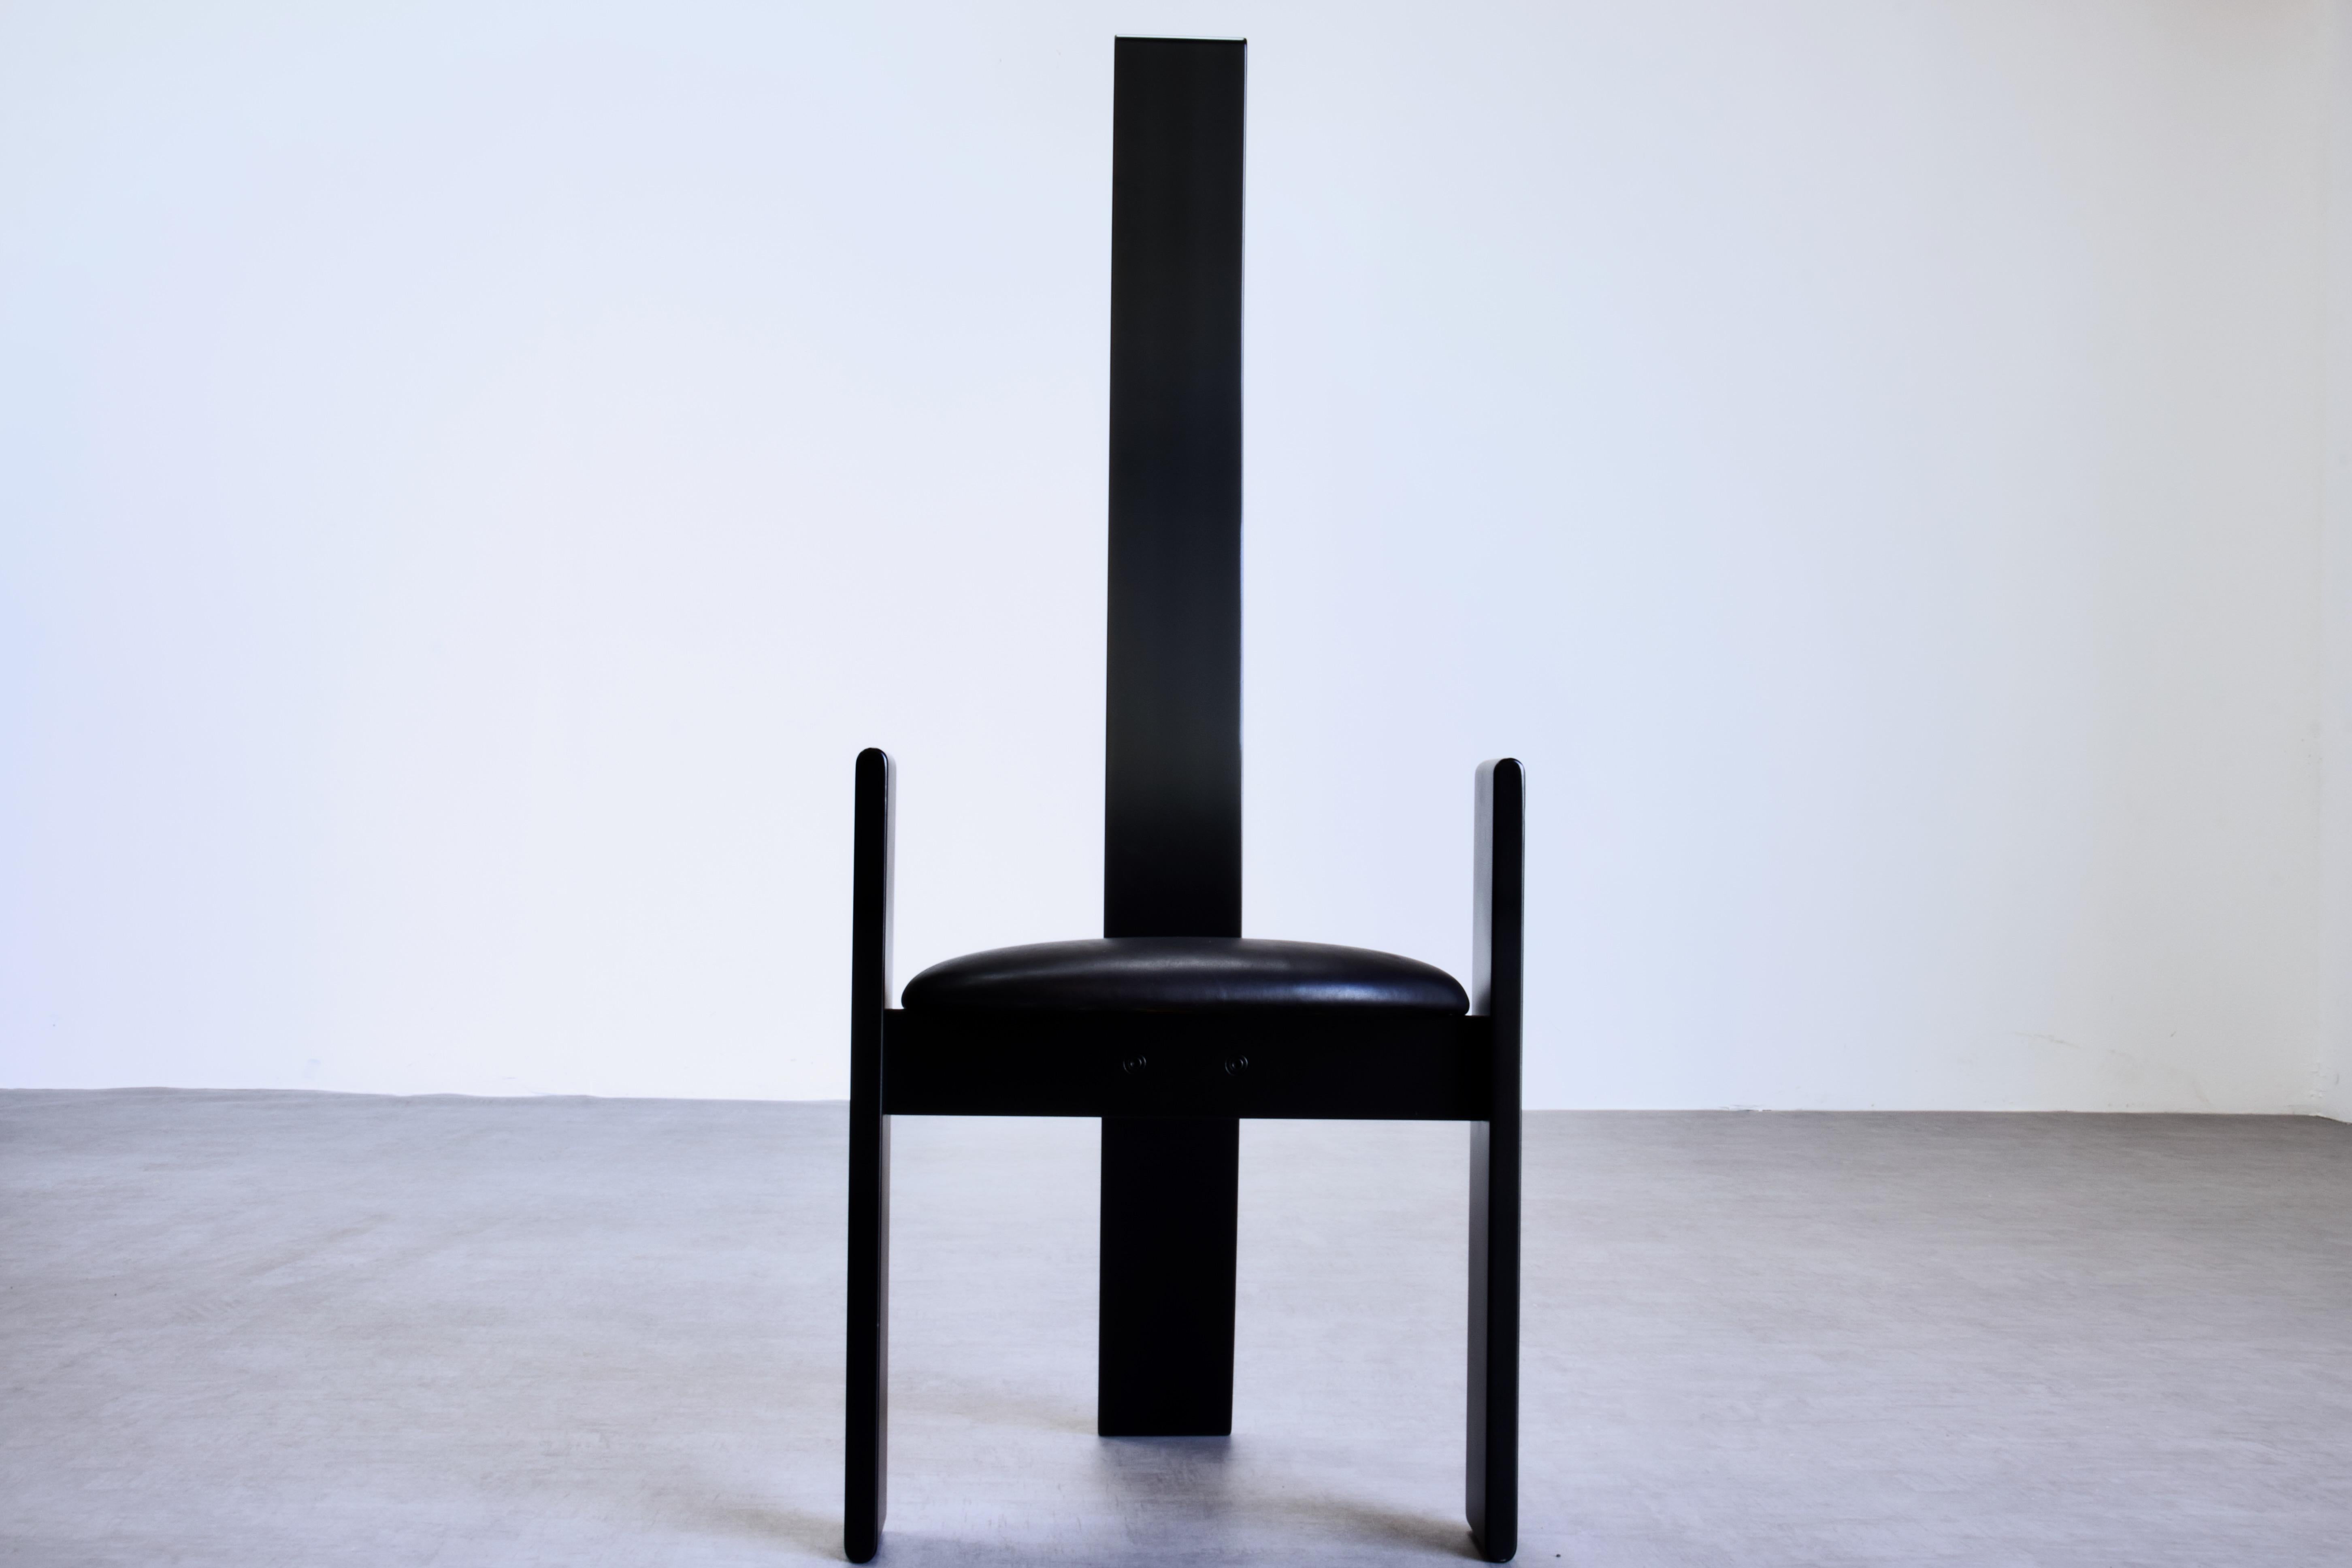 Zwei atemberaubende SD51 Golem-Stühle mit hoher Rückenlehne von Vico Magistretti für Poggi, 1969 Italien. Dieser postmoderne Stuhl spielt mit der Ästhetik des Mid-Century Modern von Carlo, Afra und Tobia Scarpa. 

Die Stühle sind aus gebogenem